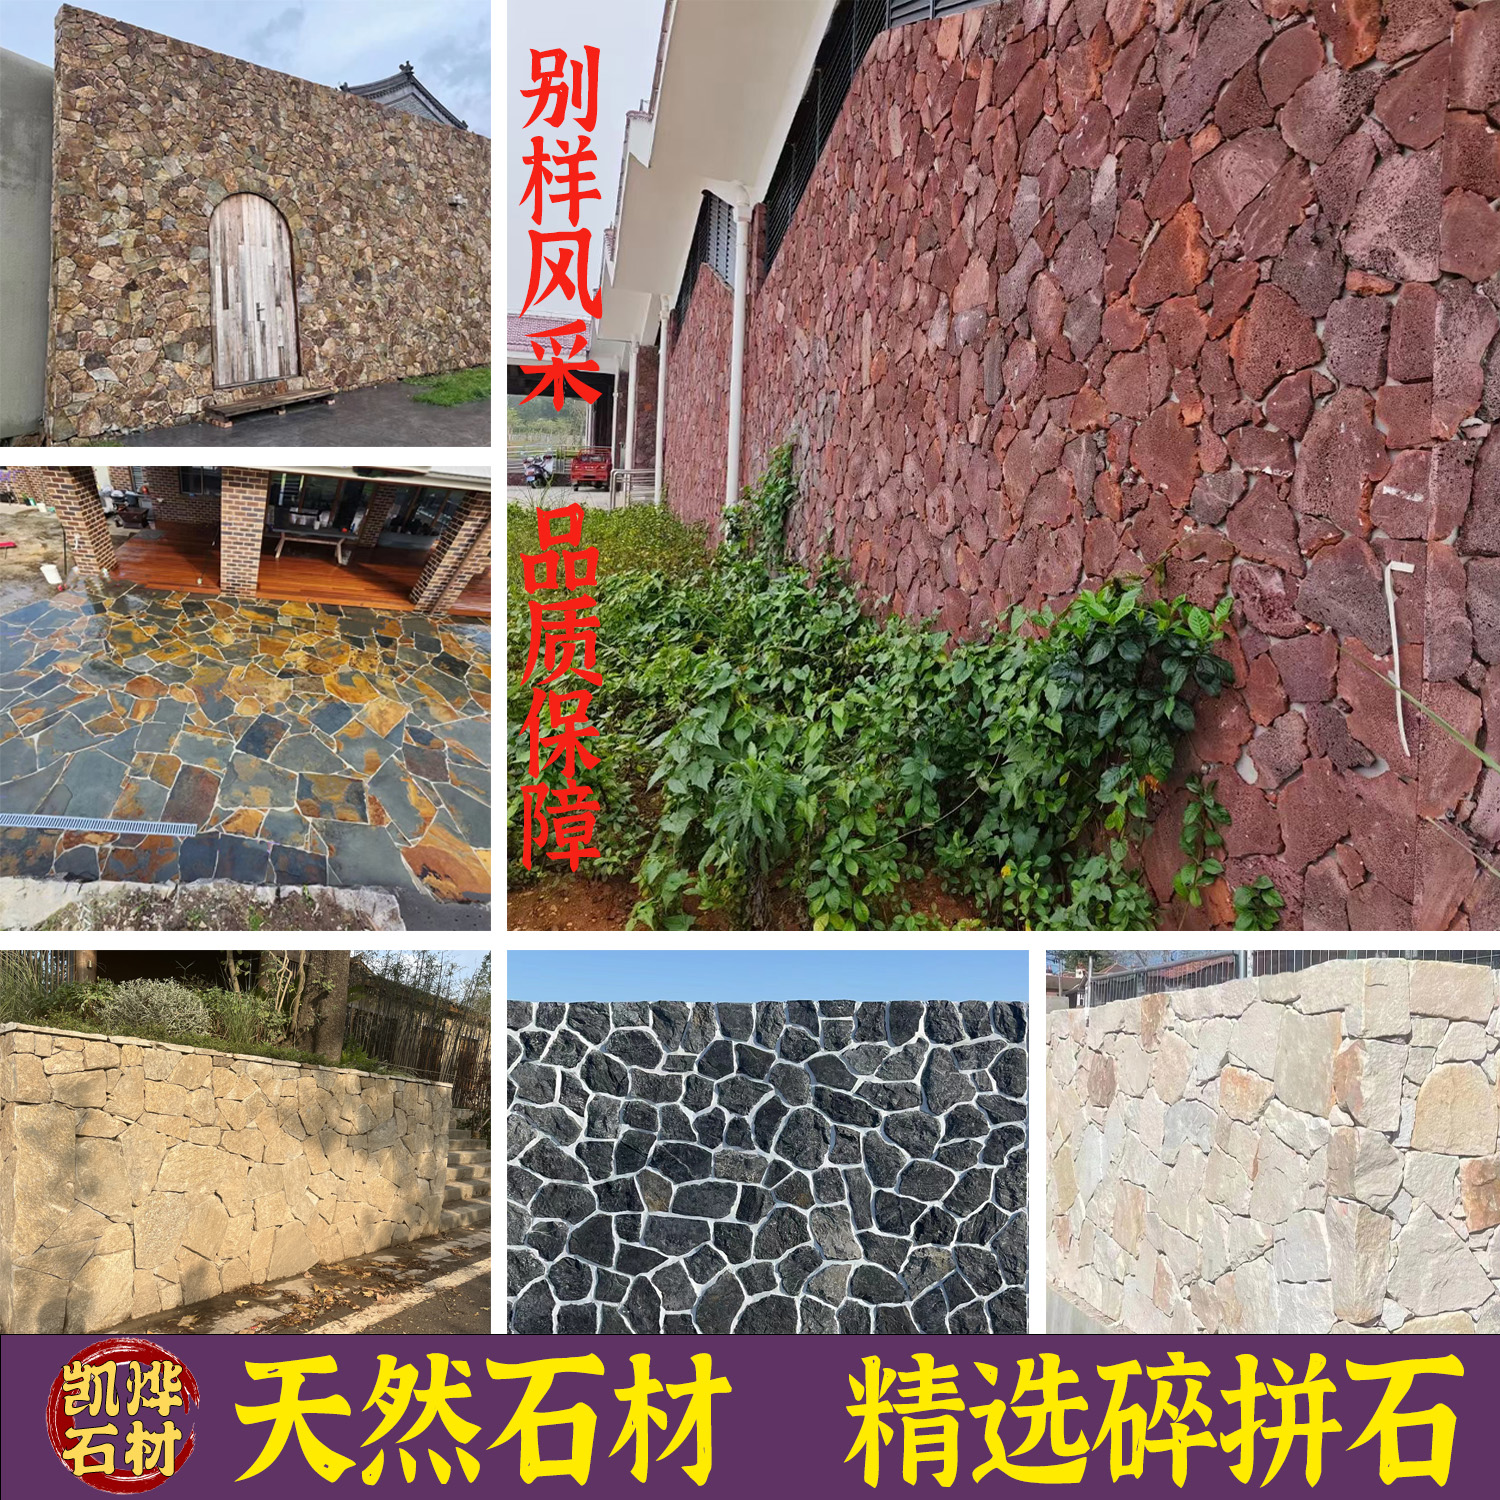 天然文化石不规则碎拼石乱形石材别墅外墙砖片石背景墙庭院石头墙